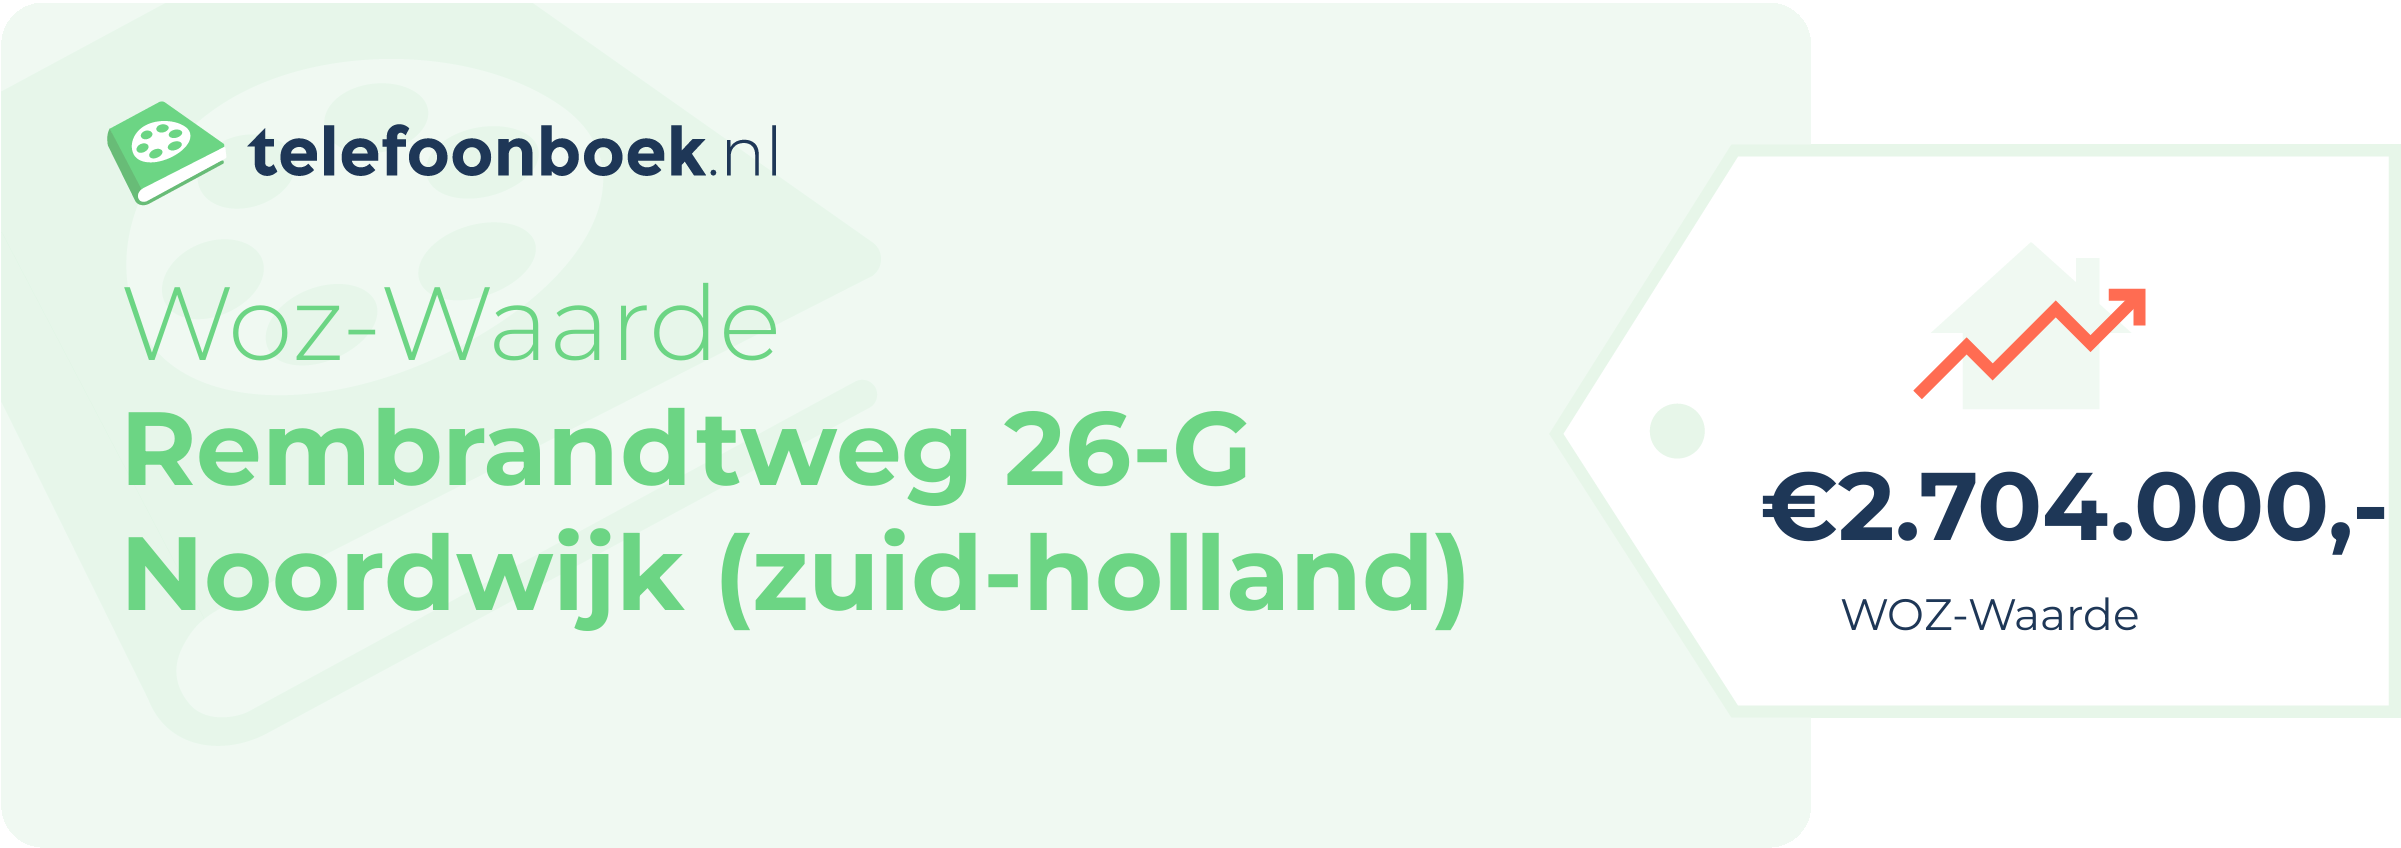 WOZ-waarde Rembrandtweg 26-G Noordwijk (Zuid-Holland)